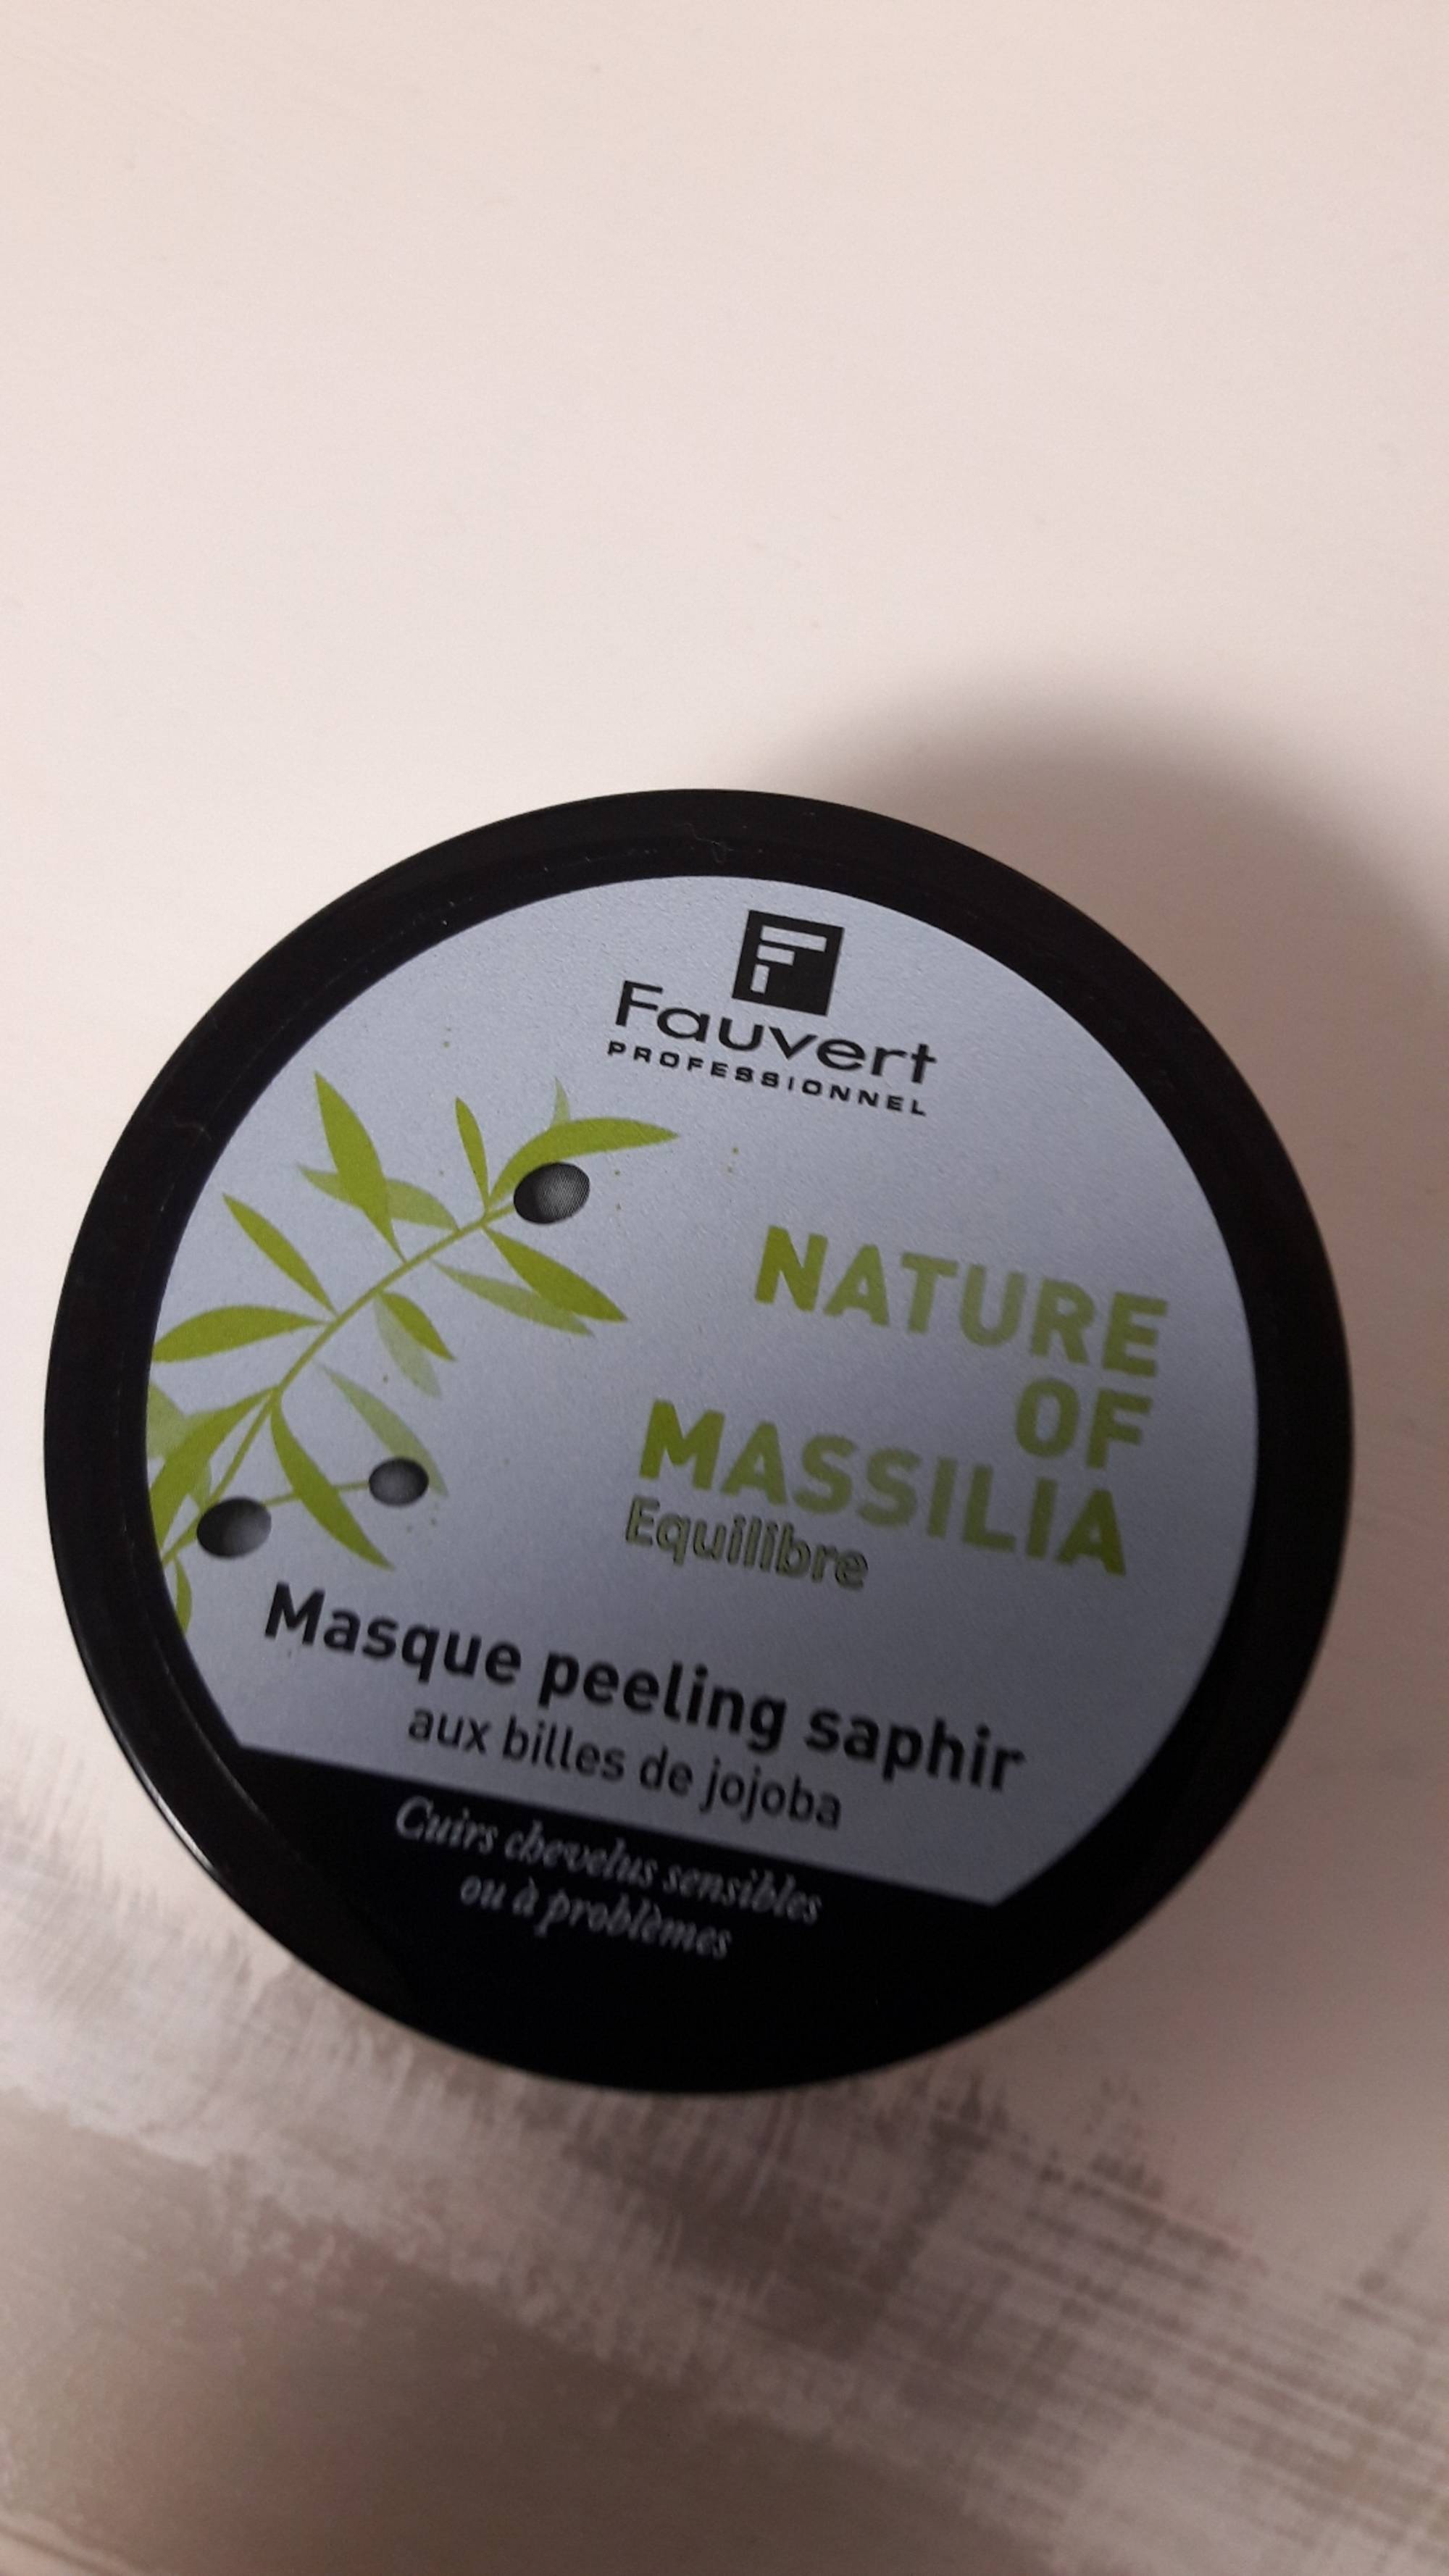 FAUVERT - Nature of massilia - Masque peeling saphir